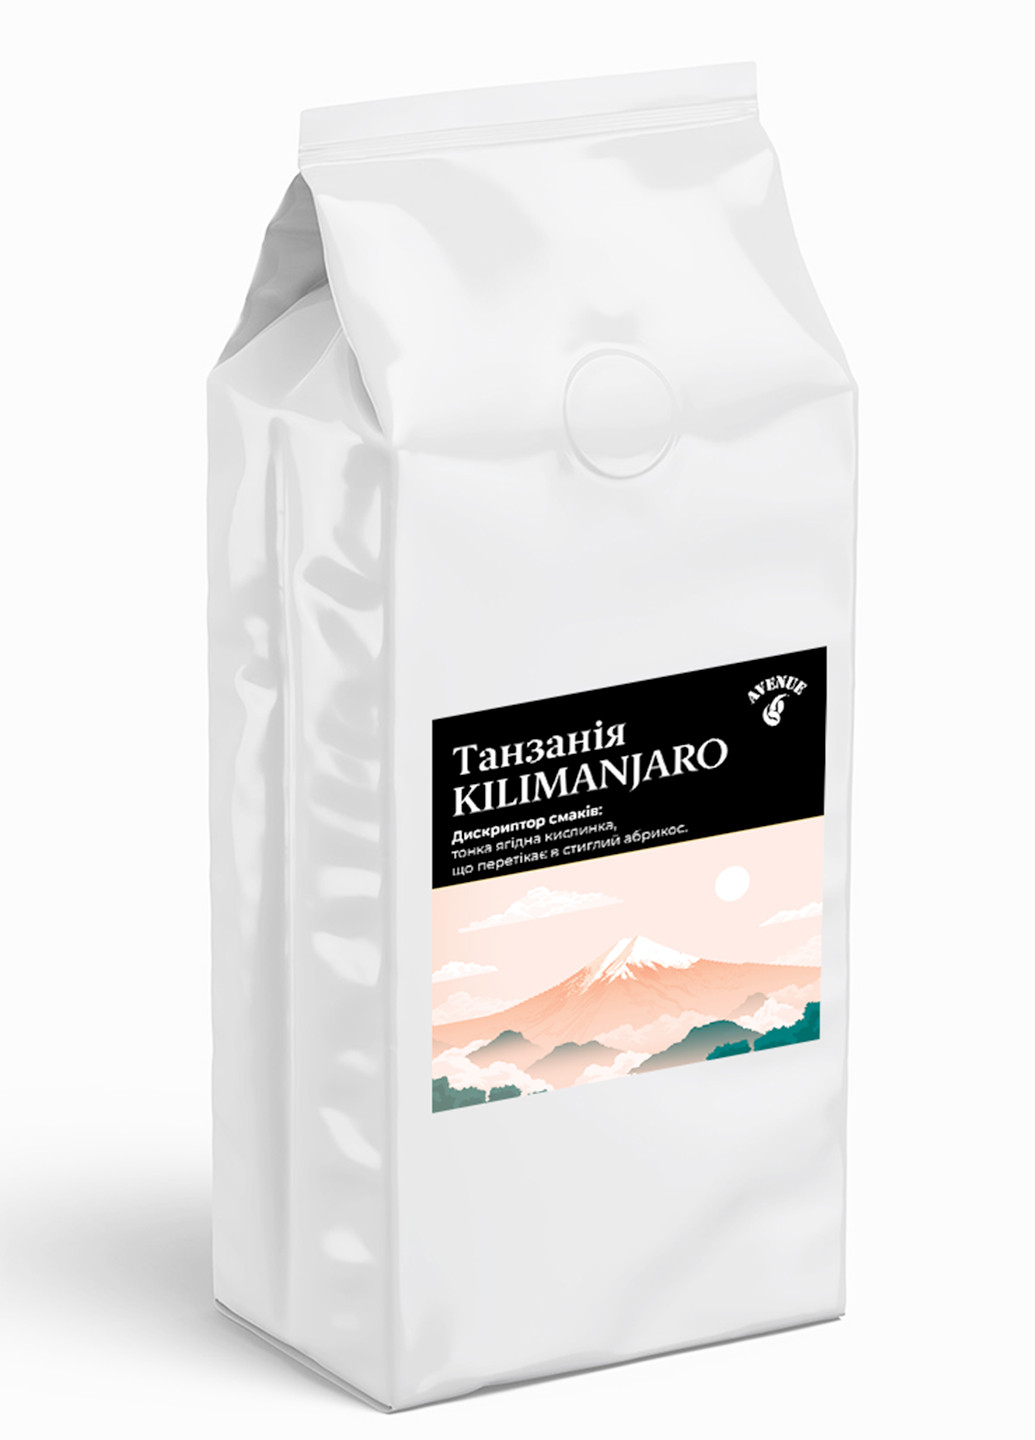 Кофе Танзания Kilimanjaro 100% Арабика в зернах свежеобжаренный 1кг Avenue 66 (276003211)